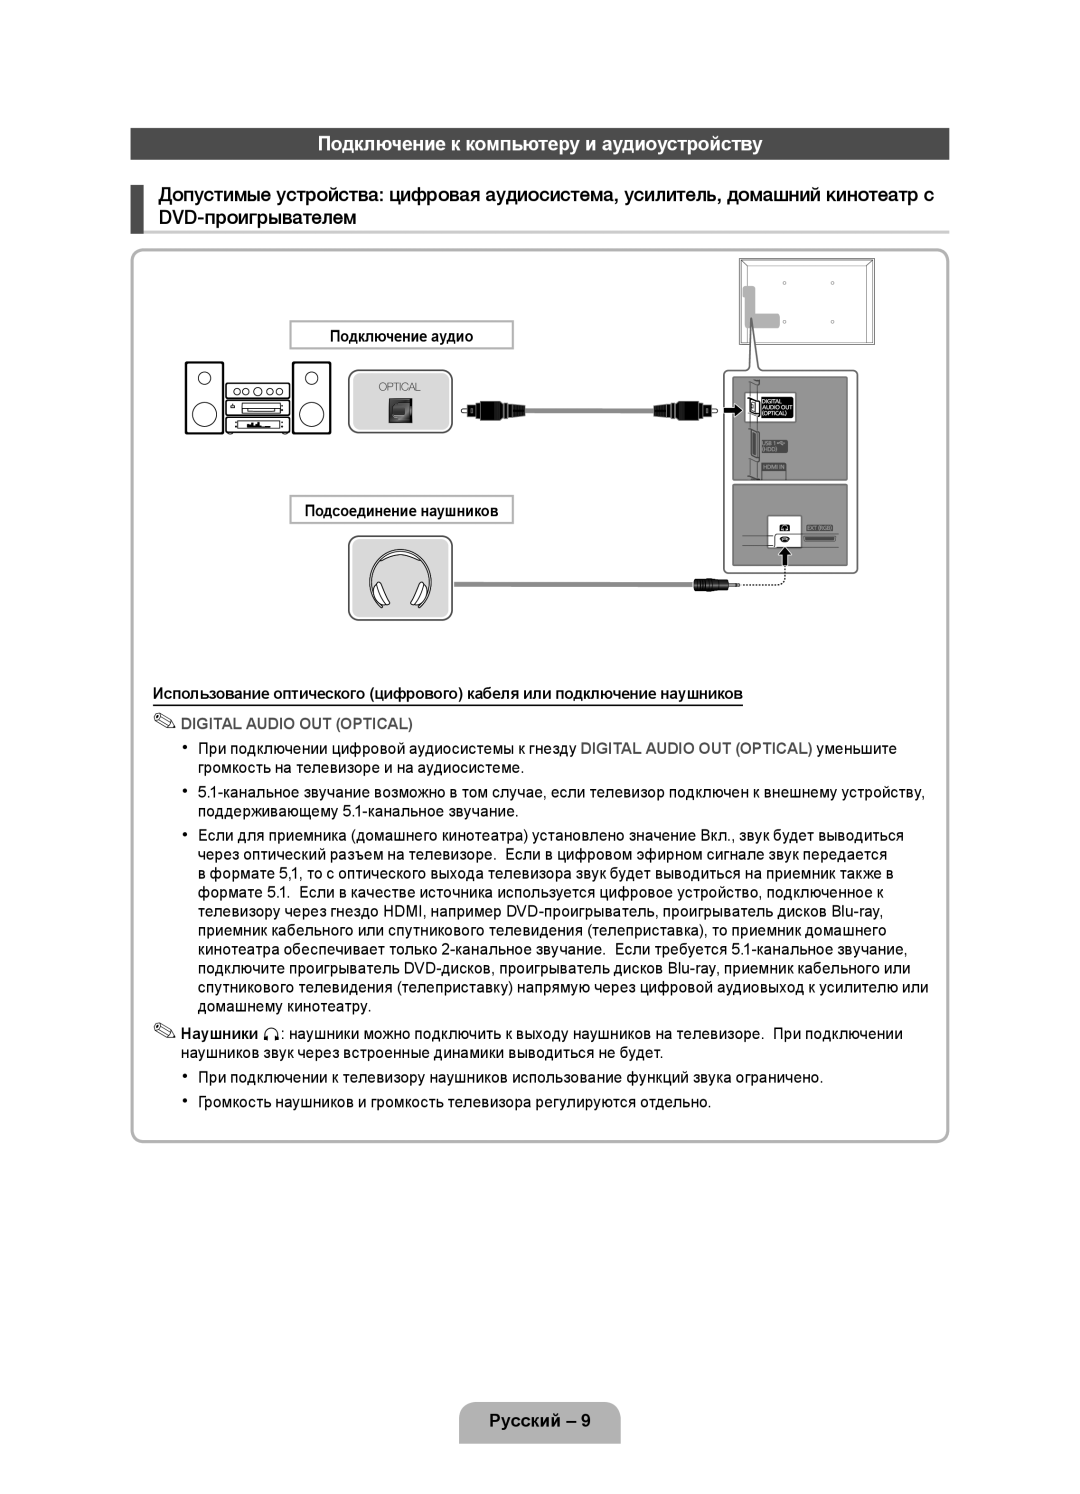 Samsung UE46D5000PWXZG Подключение к компьютеру и аудиоустройству, Русский, Подключение аудио, Подсоединение наушников 